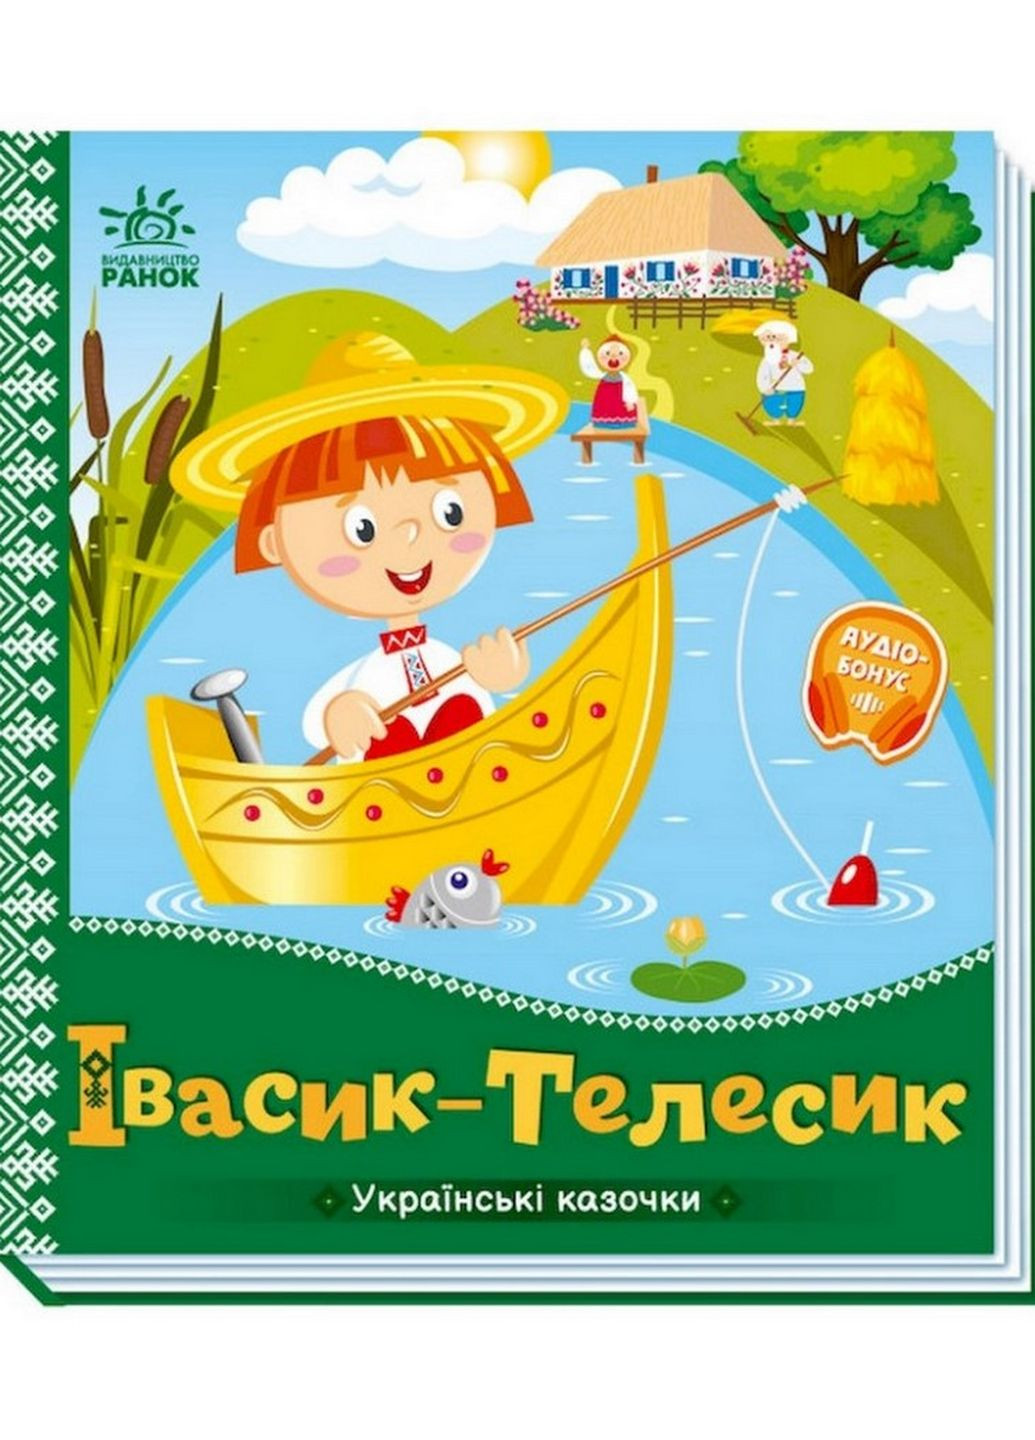 Українські казочки Івасик-Телесик Ранок 1722002 аудіо-бонус Ranok Creative (276776612)